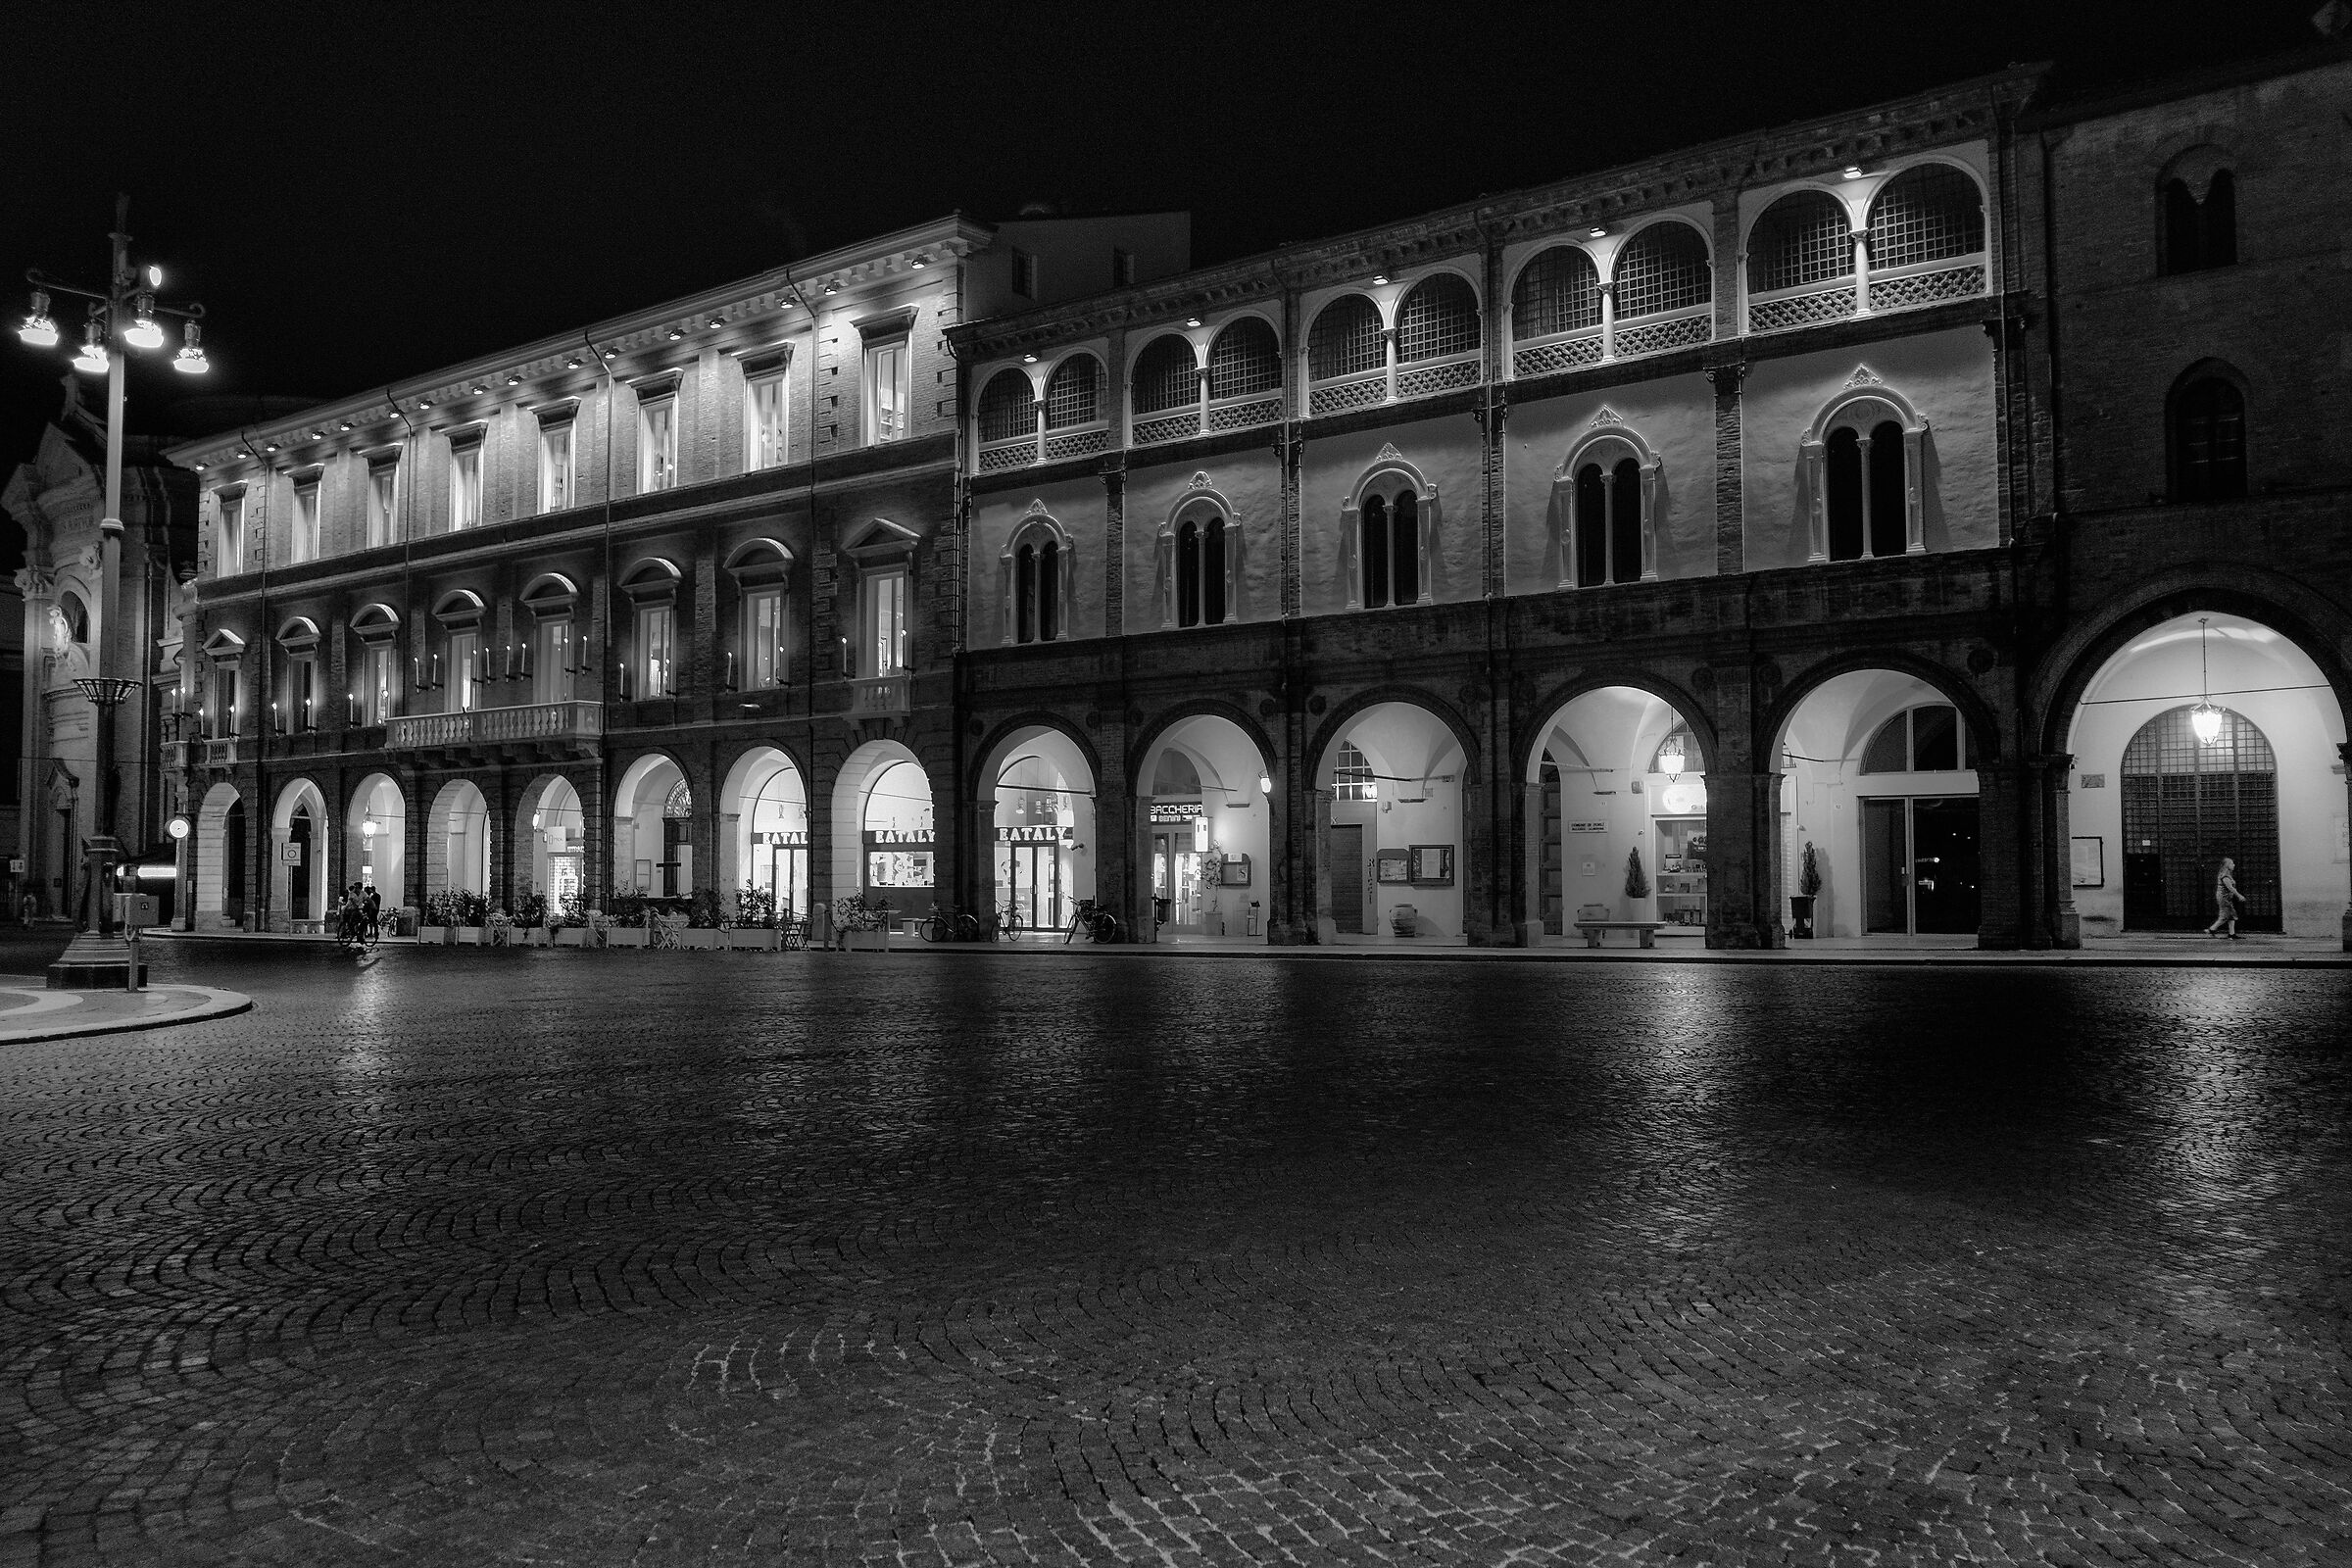 A glimpse of Forlì's Saffi Square...